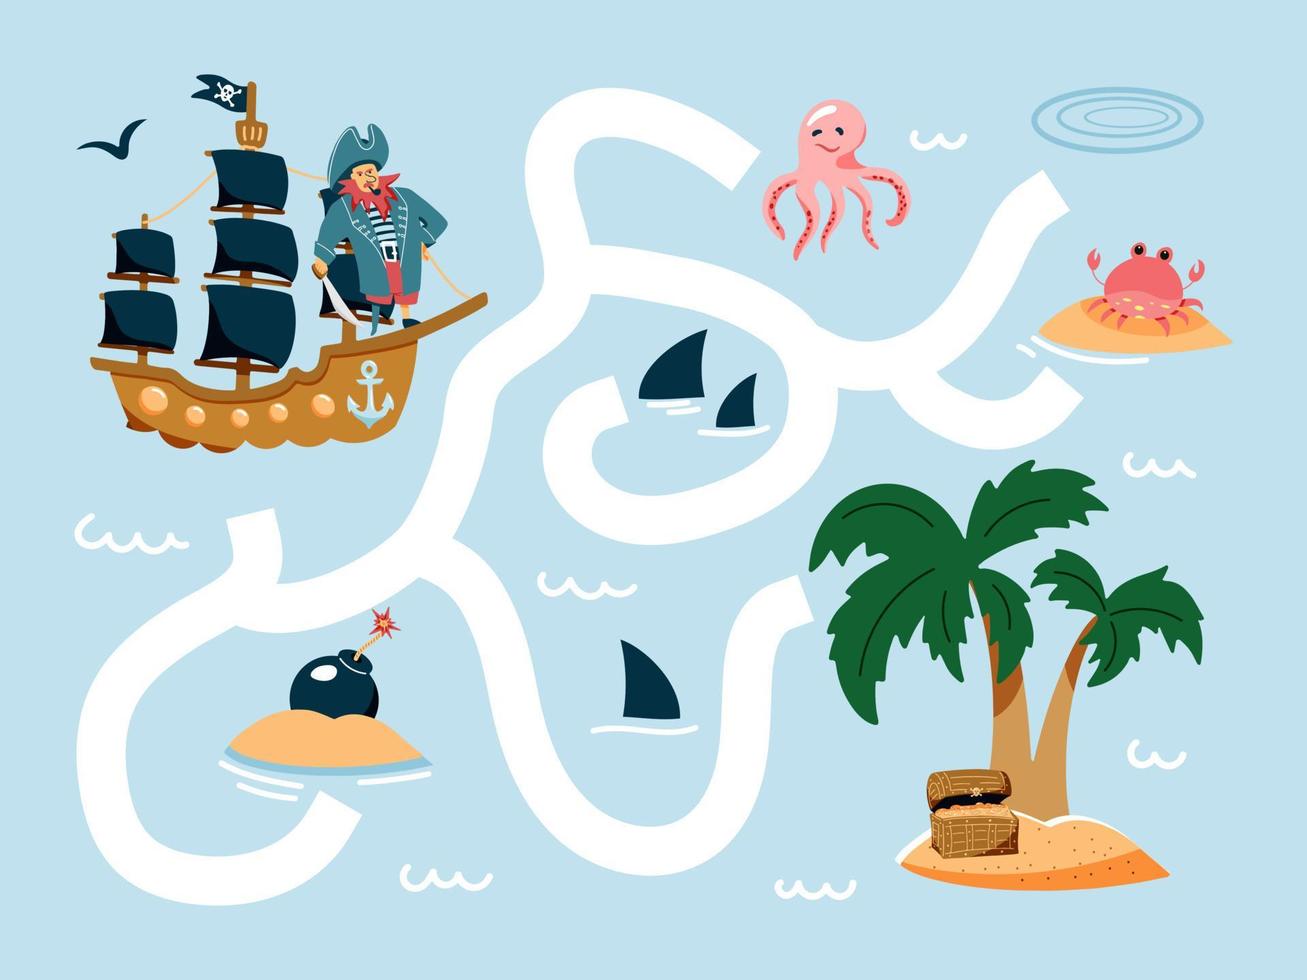 ajude o navio pirata a encontrar o caminho para a ilha. jogo de labirinto de pirata bonito dos desenhos animados. labirinto. jogo divertido para a educação infantil. ilustração vetorial vetor